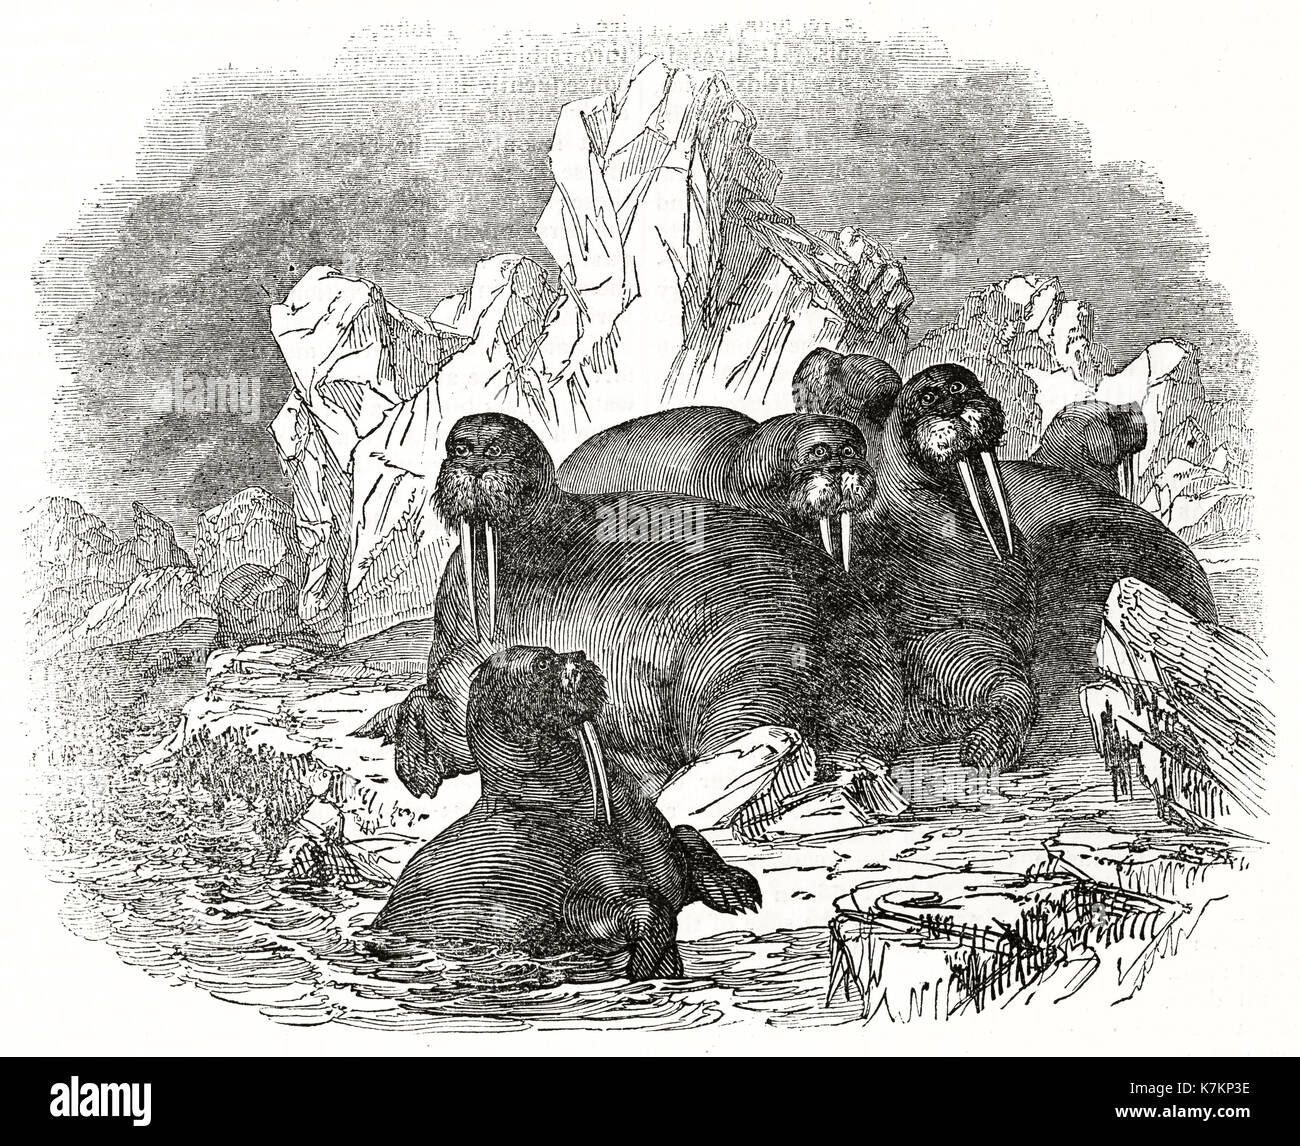 Ilustración antigua de morsas (Odobenus rosmarus). Por autor no identificado, Publ. de la Penny Magazine, Londres, 1837 Foto de stock